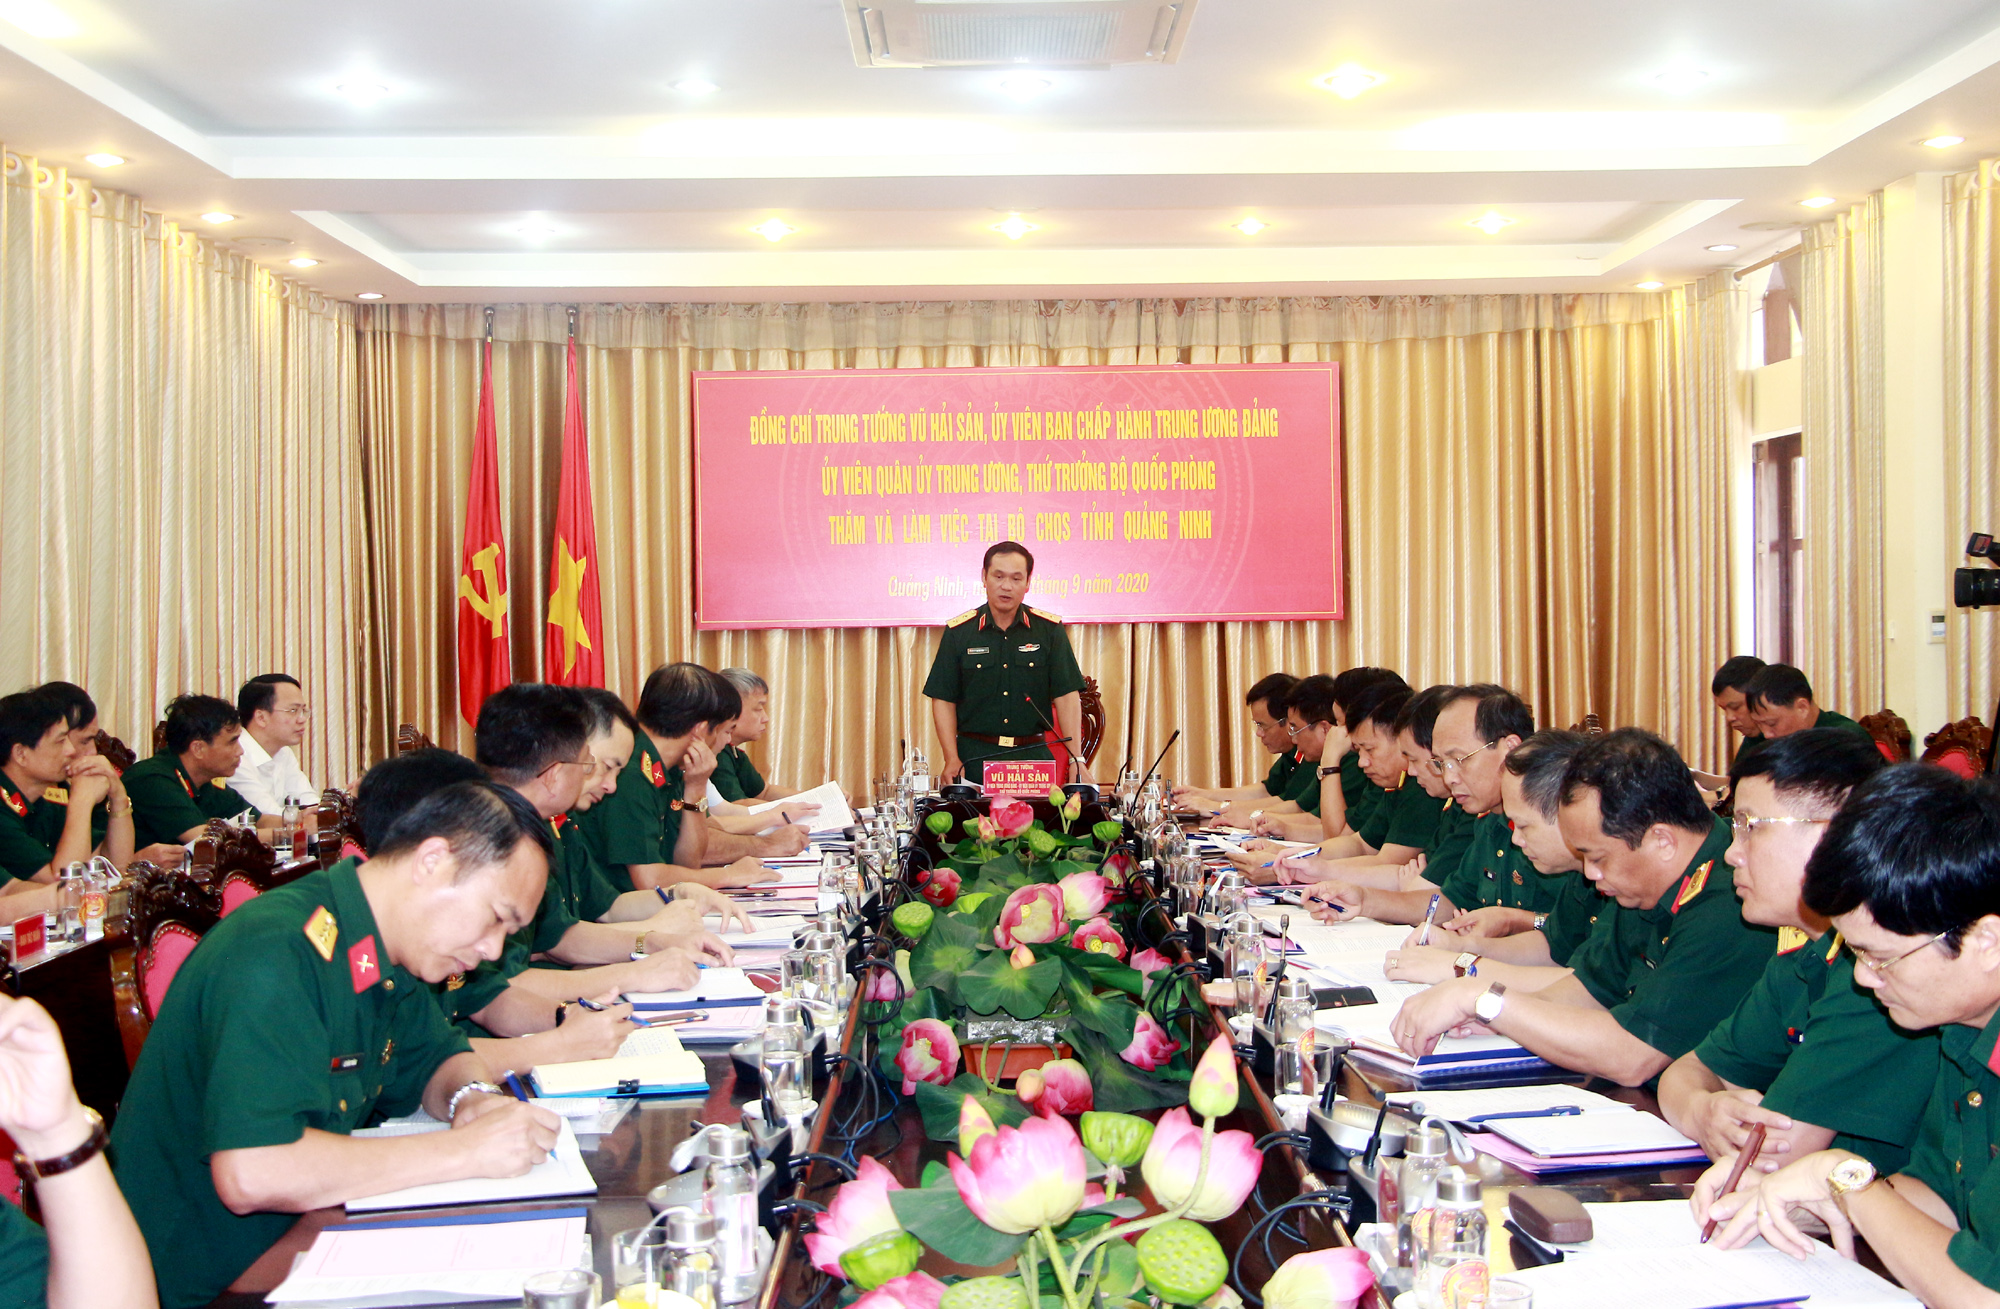 Trung tướng Vũ Hải Sản, Ủy viên Quân ủy Trung ương, Thứ trưởng Bộ Quốc phòng, phát biểu kết luận buổi làm việc.